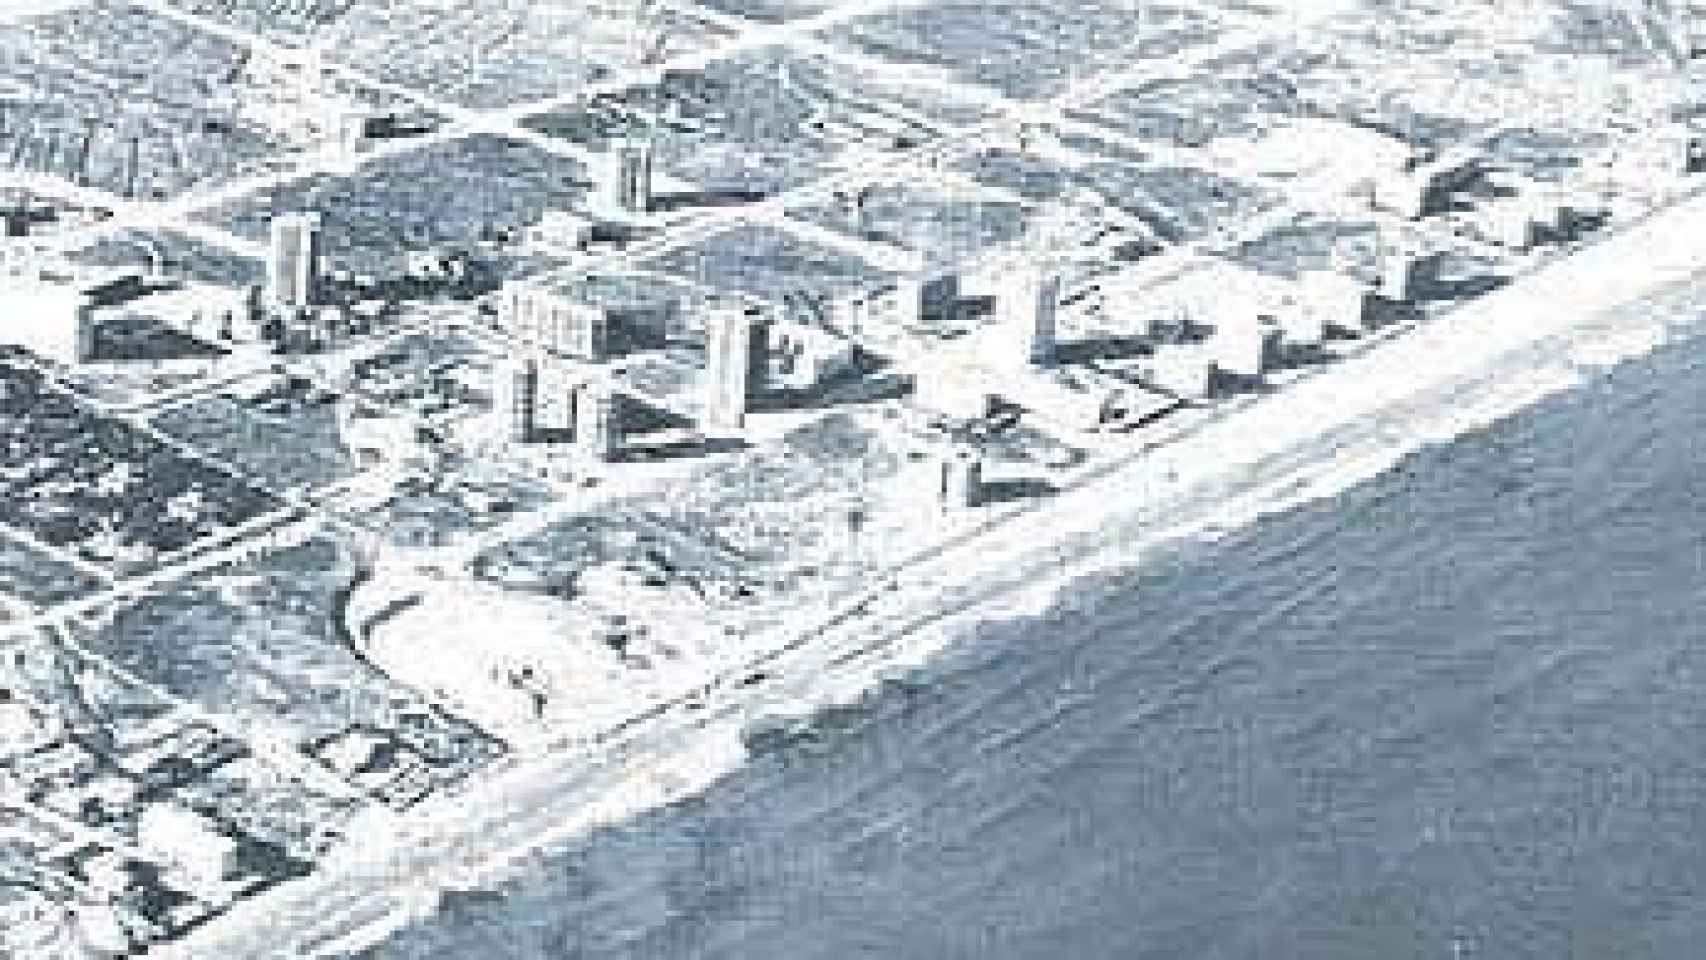 Construcciones en la Playa de san Juan en 1965.